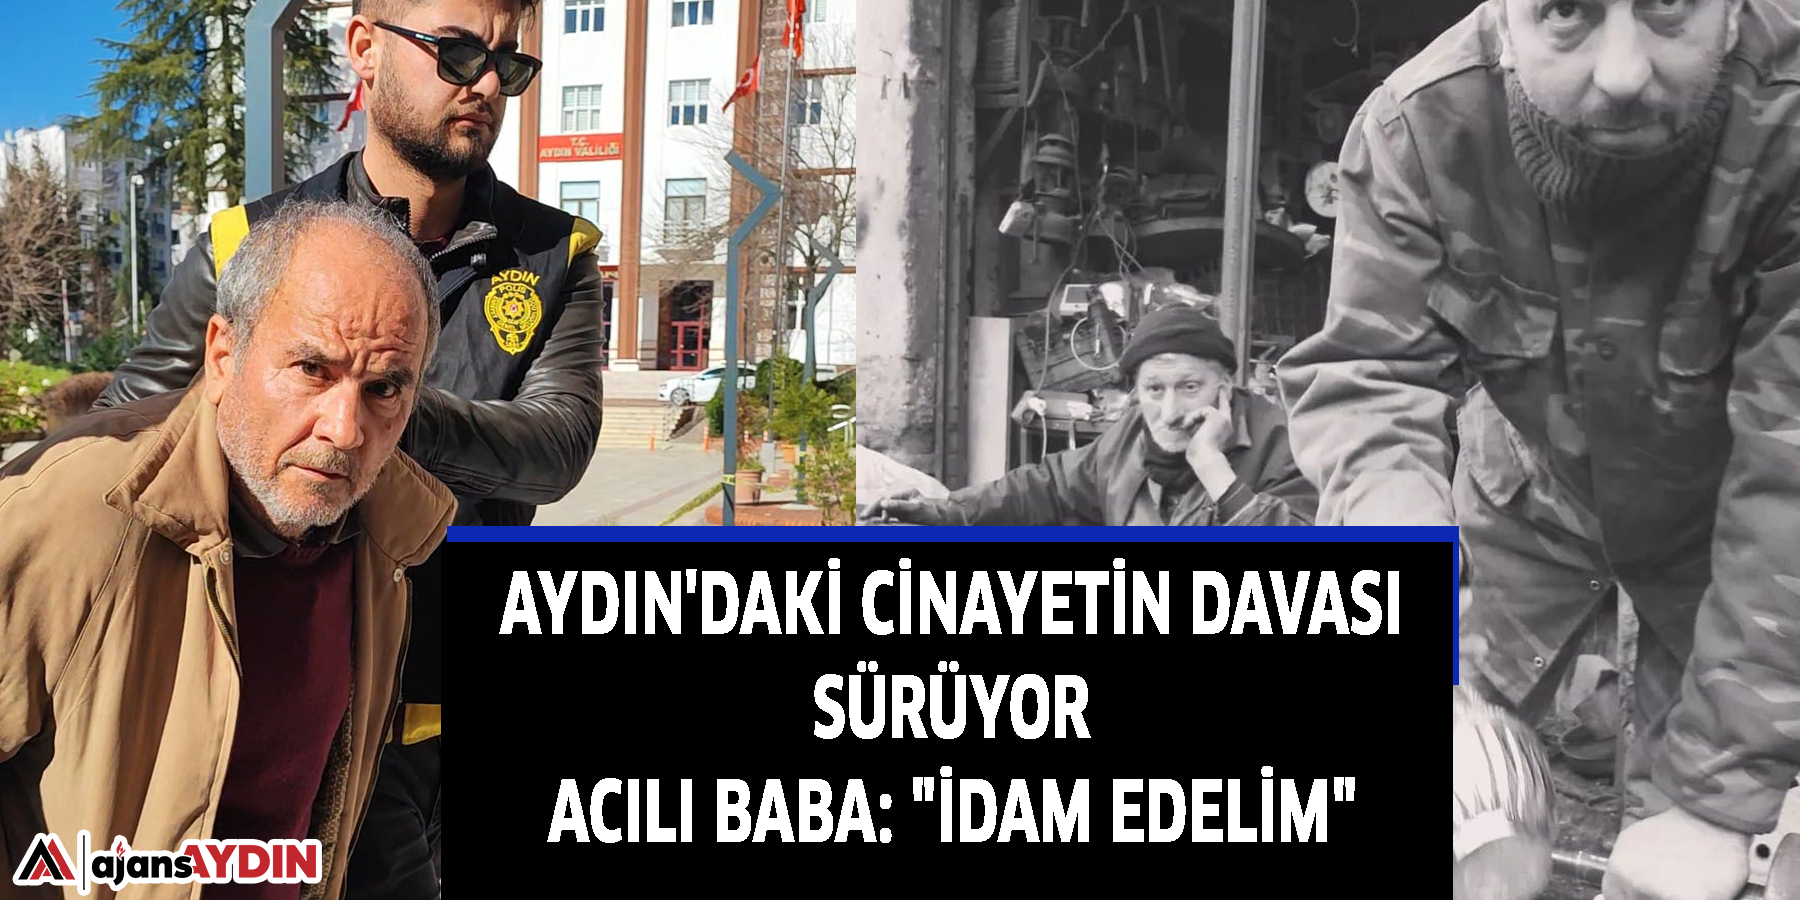 Aydın'daki cinayetin davası sürüyor Acılı baba: "İdam edelim"